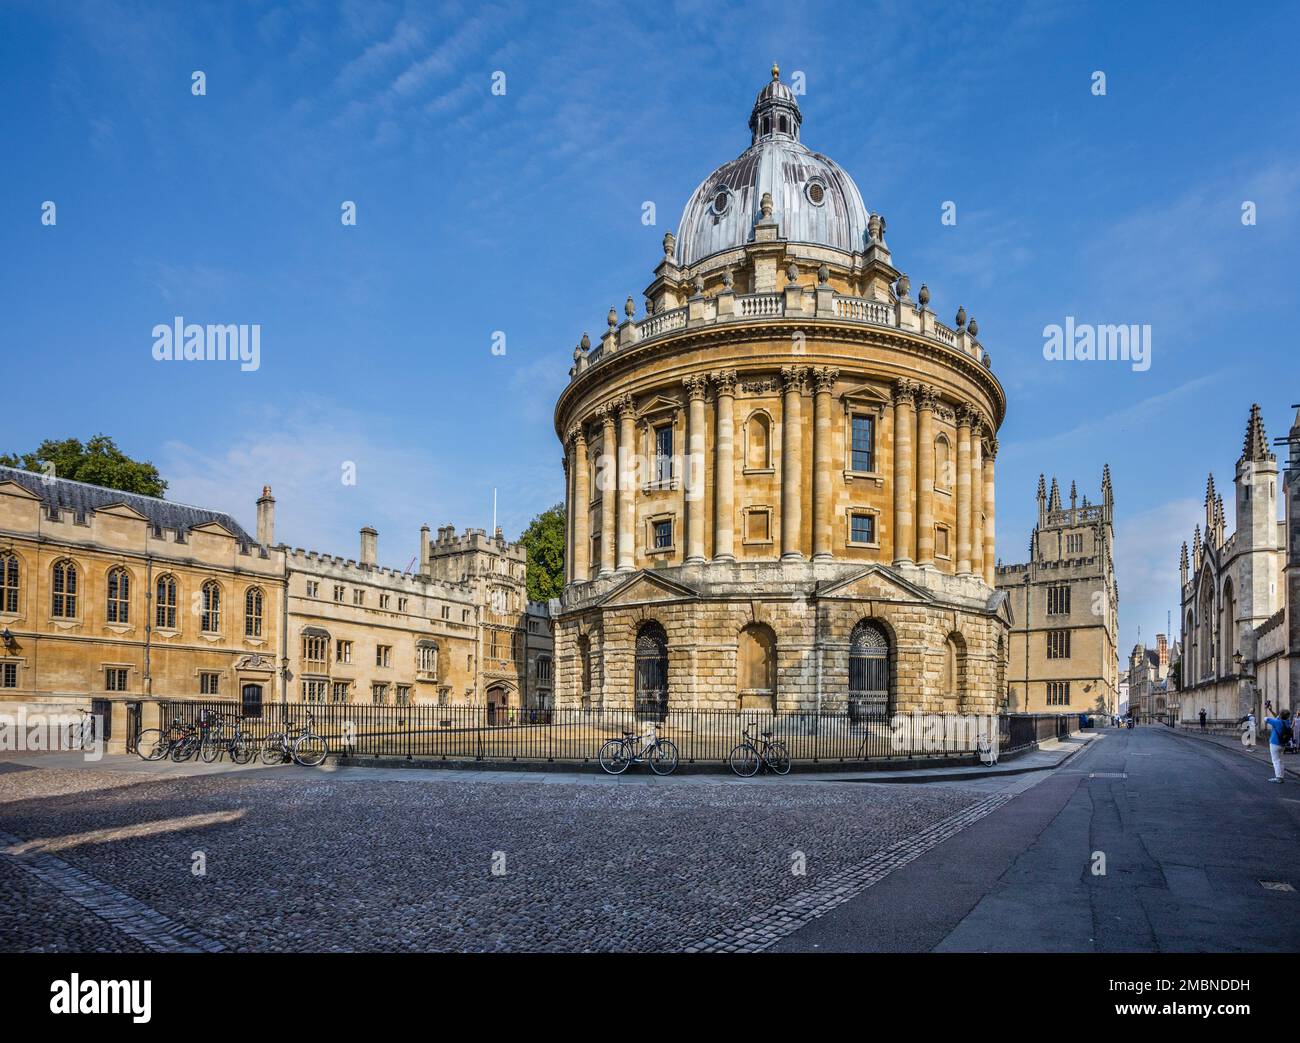 Radcliffe Camera, University of Oxford, eine akademische Bibliothek und Leseräume im Palladianischen Stil aus dem 18. Jahrhundert, entworfen von James Gibbs, Oxfordshire, Sout Stockfoto